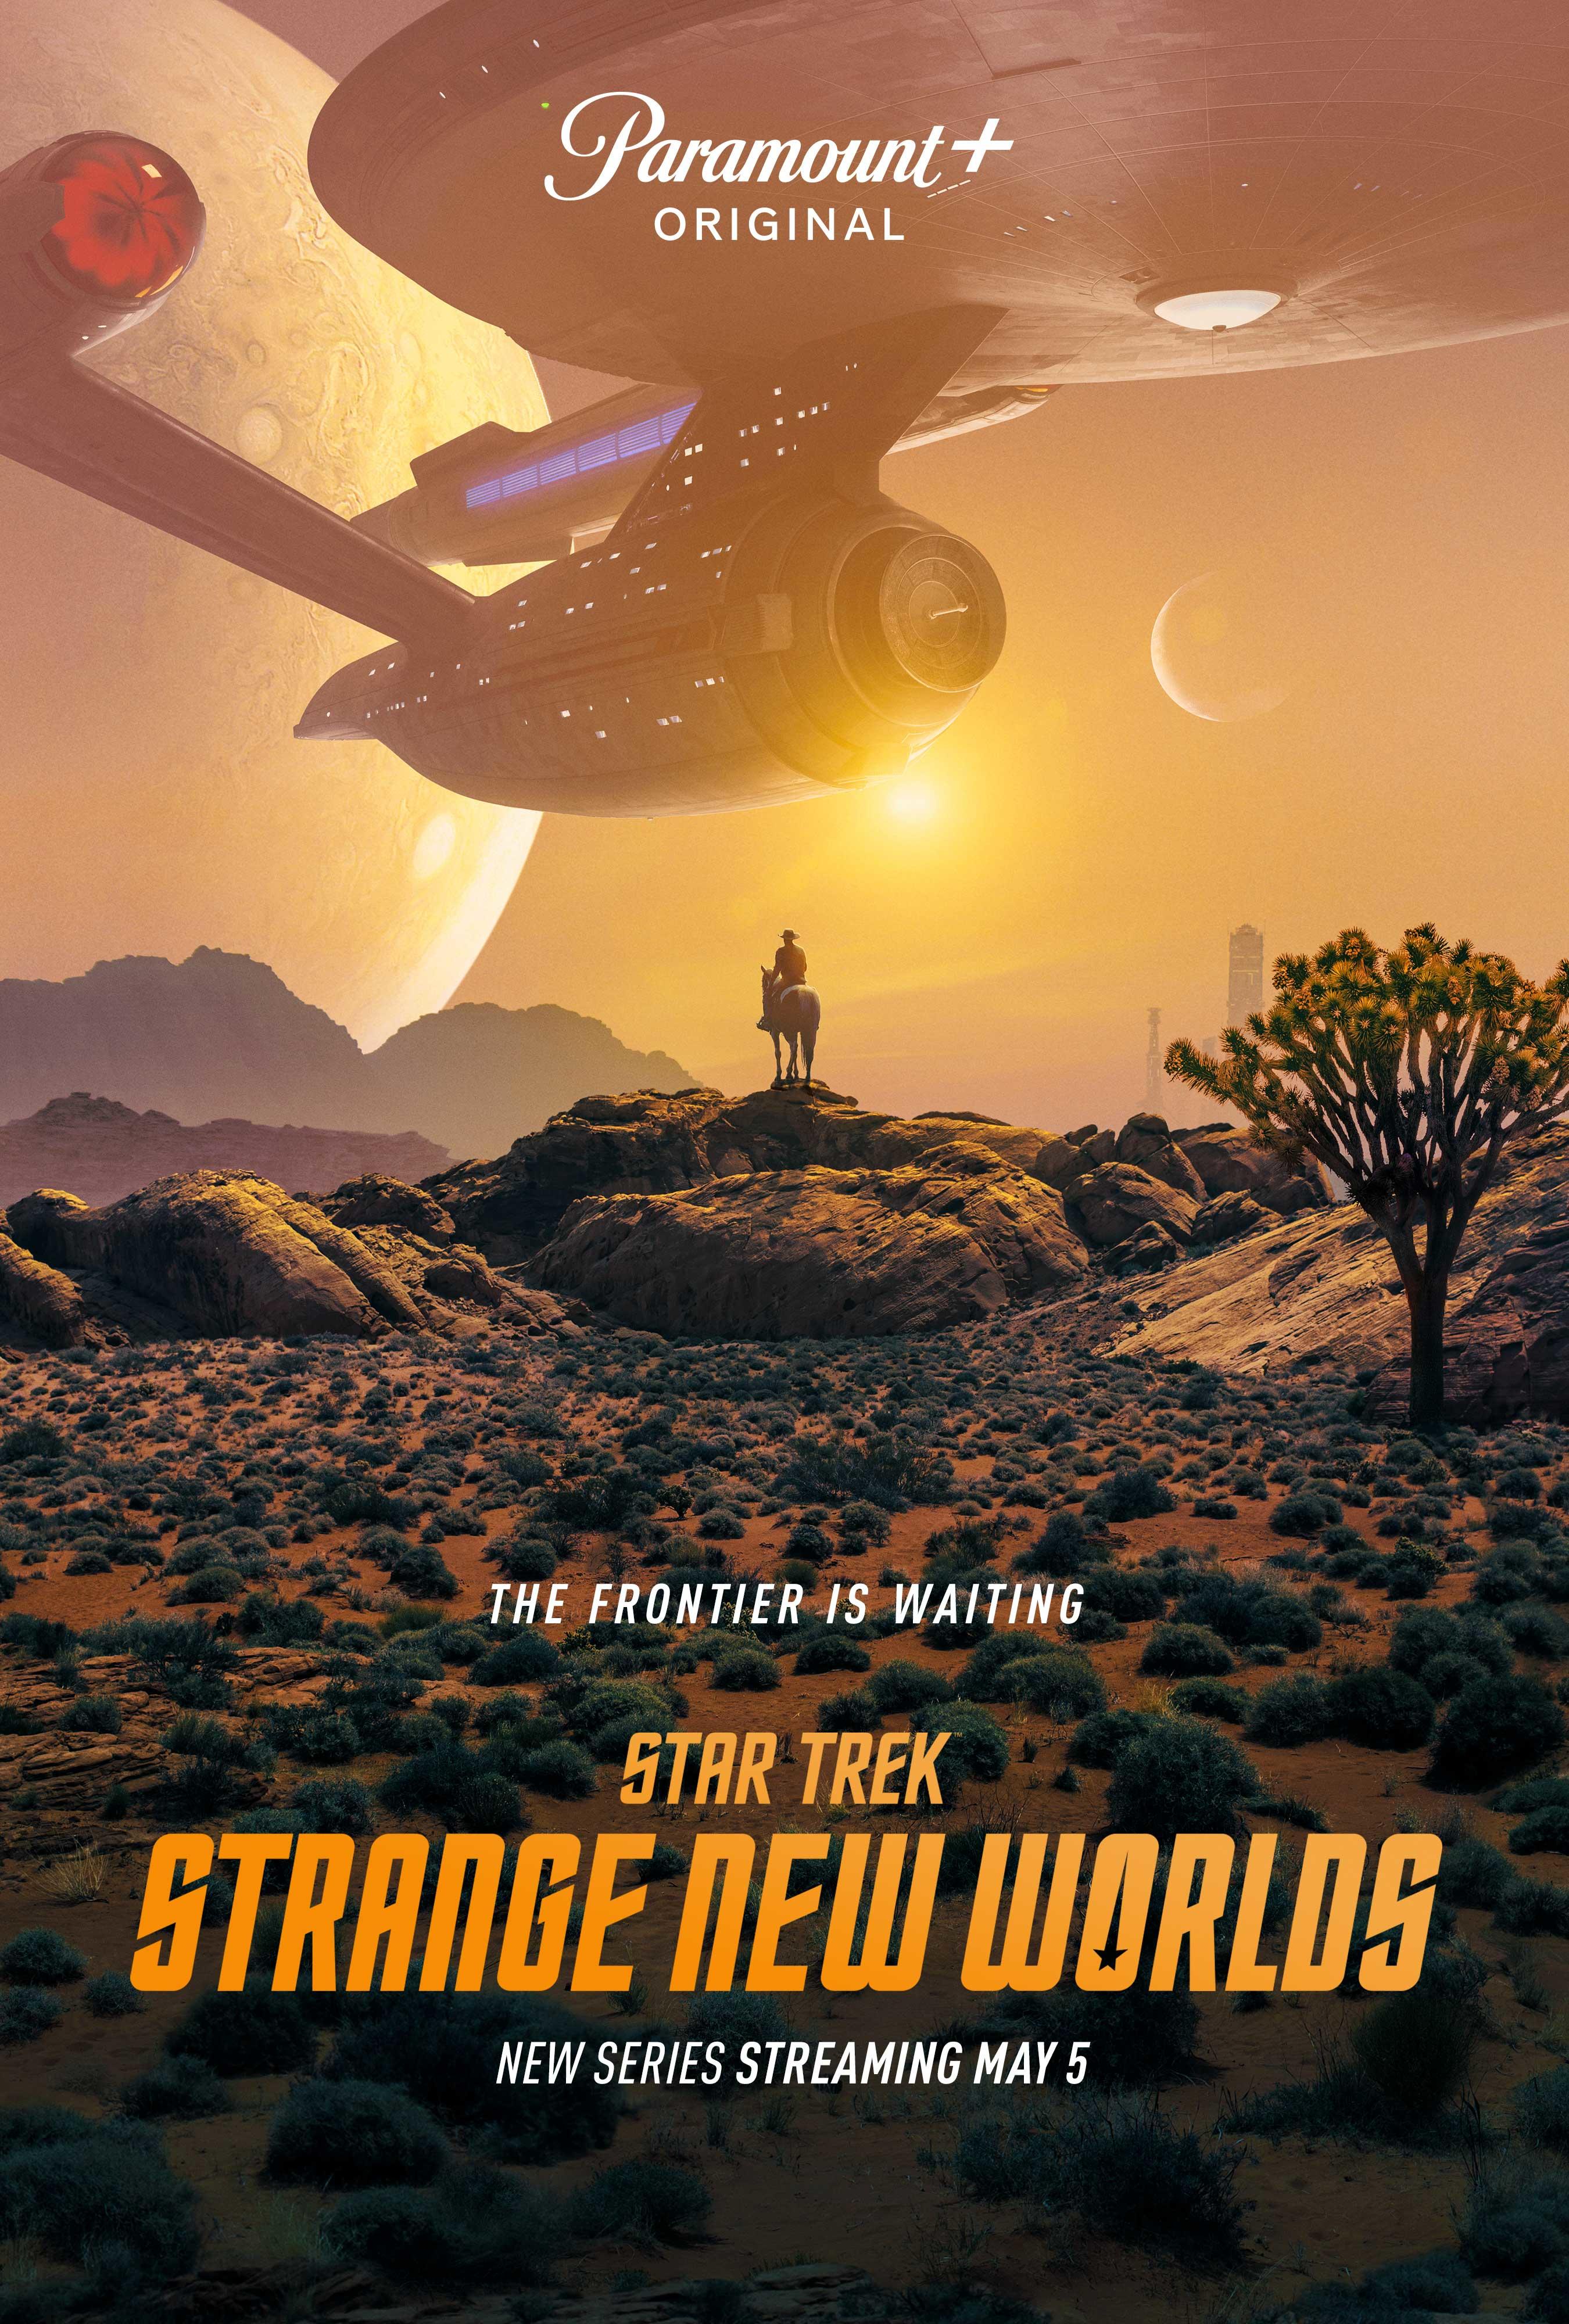 Star Trek: Strange New Worlds Poster Released